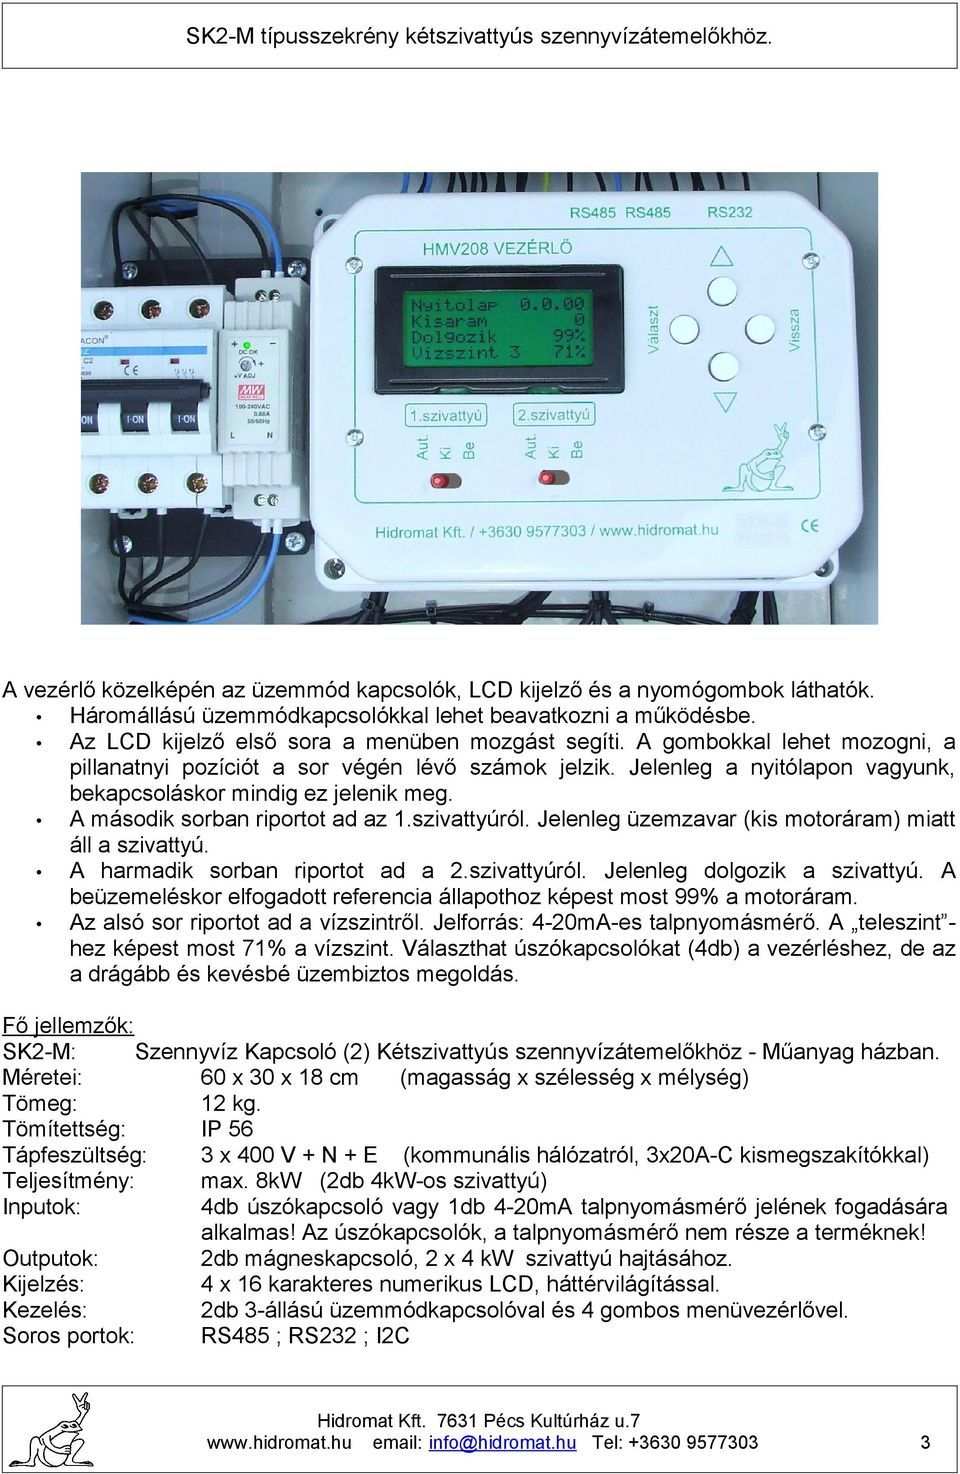 SK2-M típusszekrény kétszivattyús szennyvízátemelőkhöz. - PDF Free Download